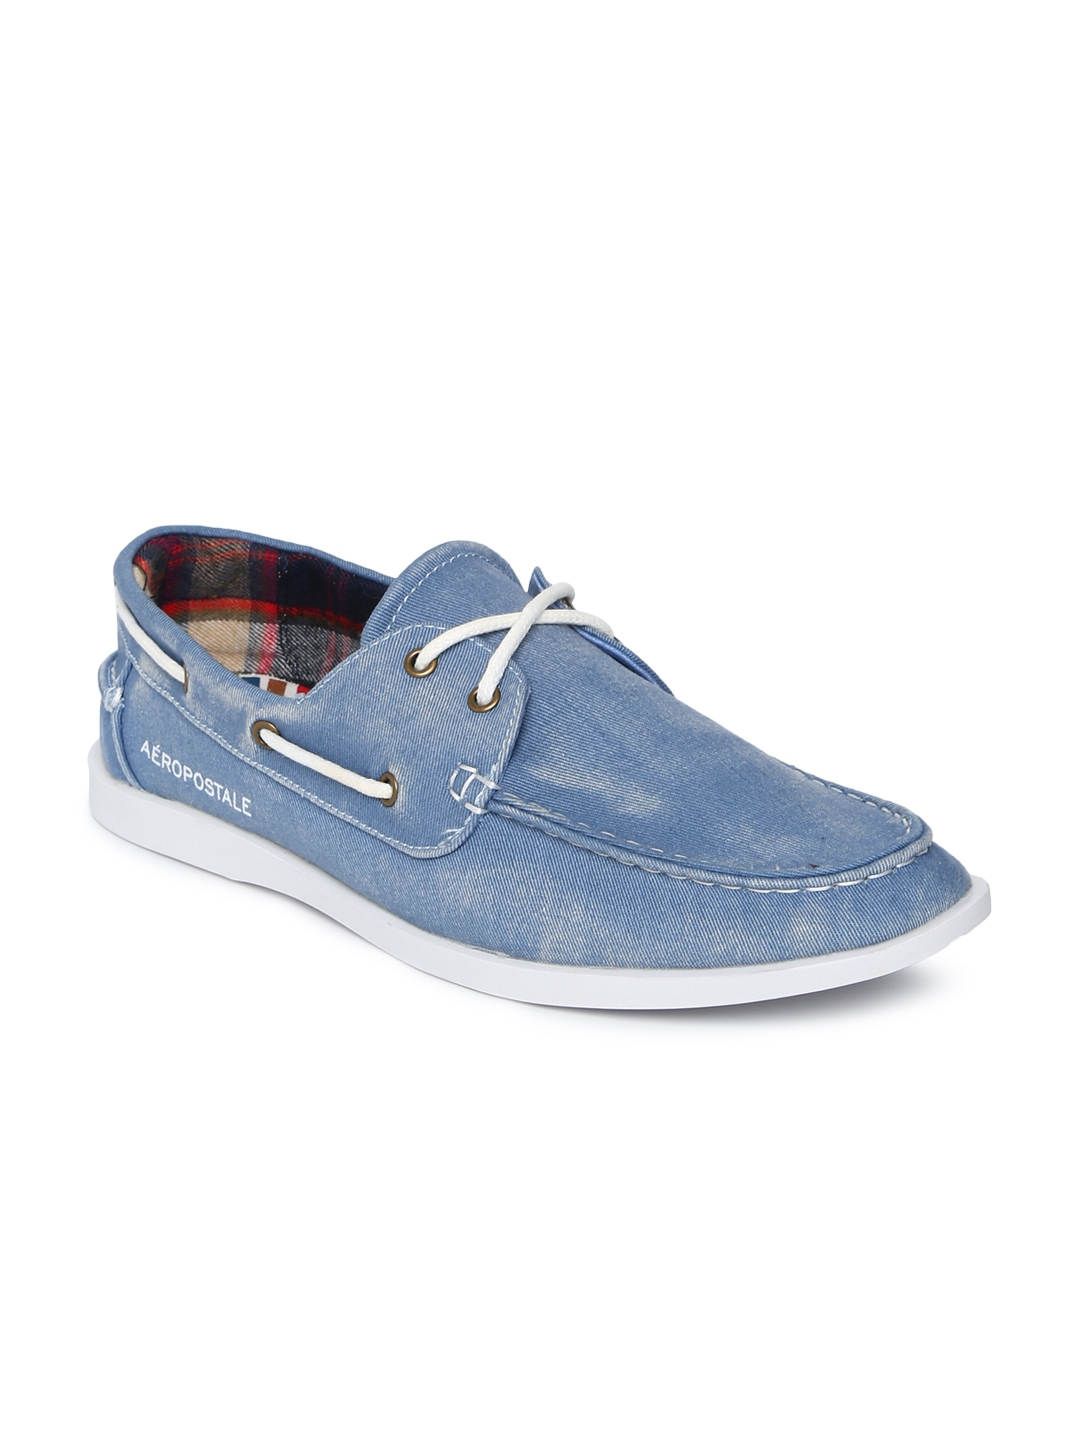 boat shoes men blue